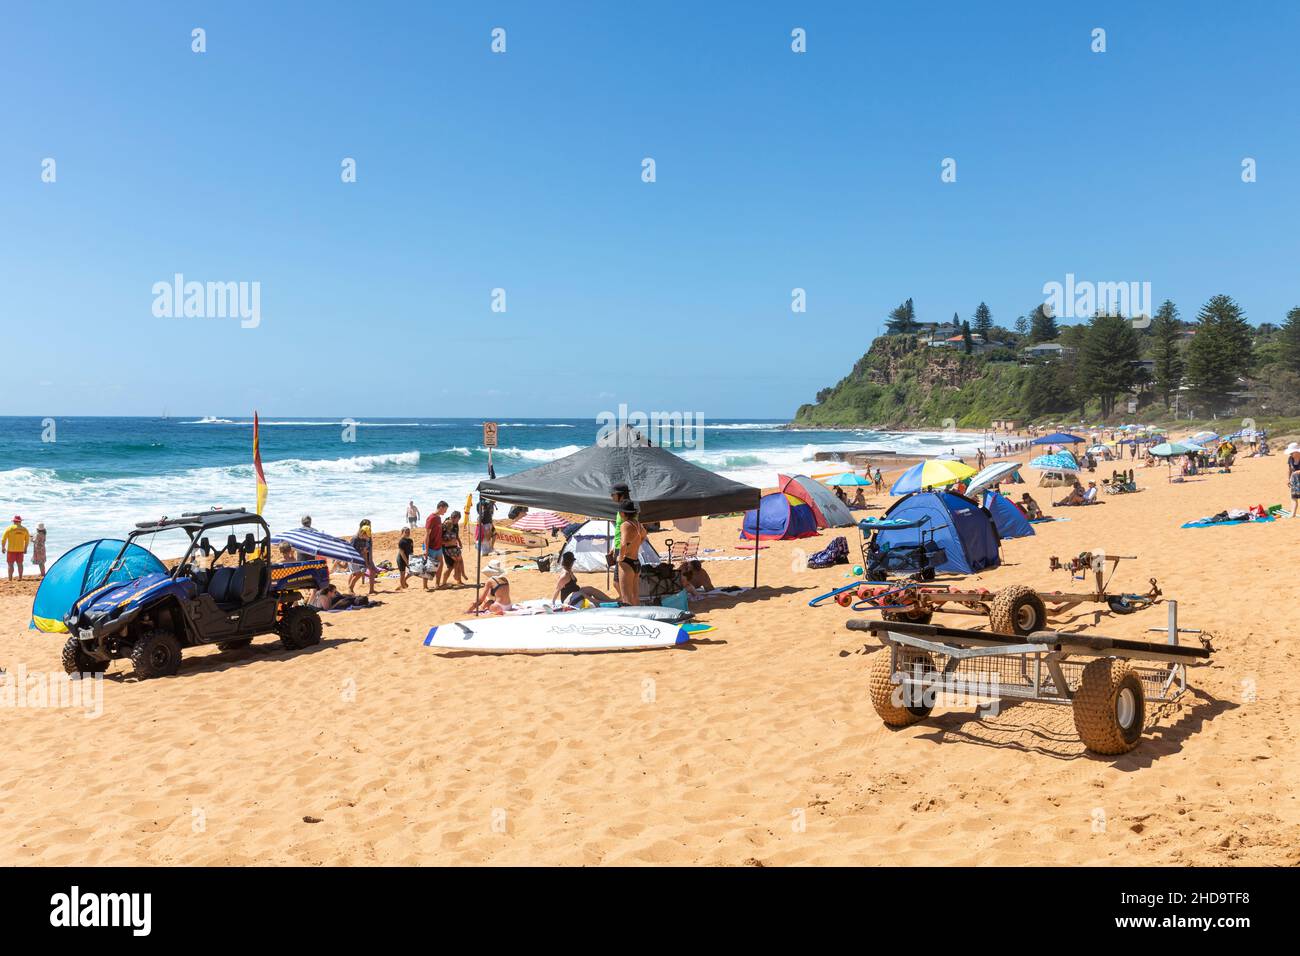 Newport Beach Sydney Australien an einem Sommertag mit Menschen, die die warme Sonne genießen, Sydney, NSW, Australien Stockfoto